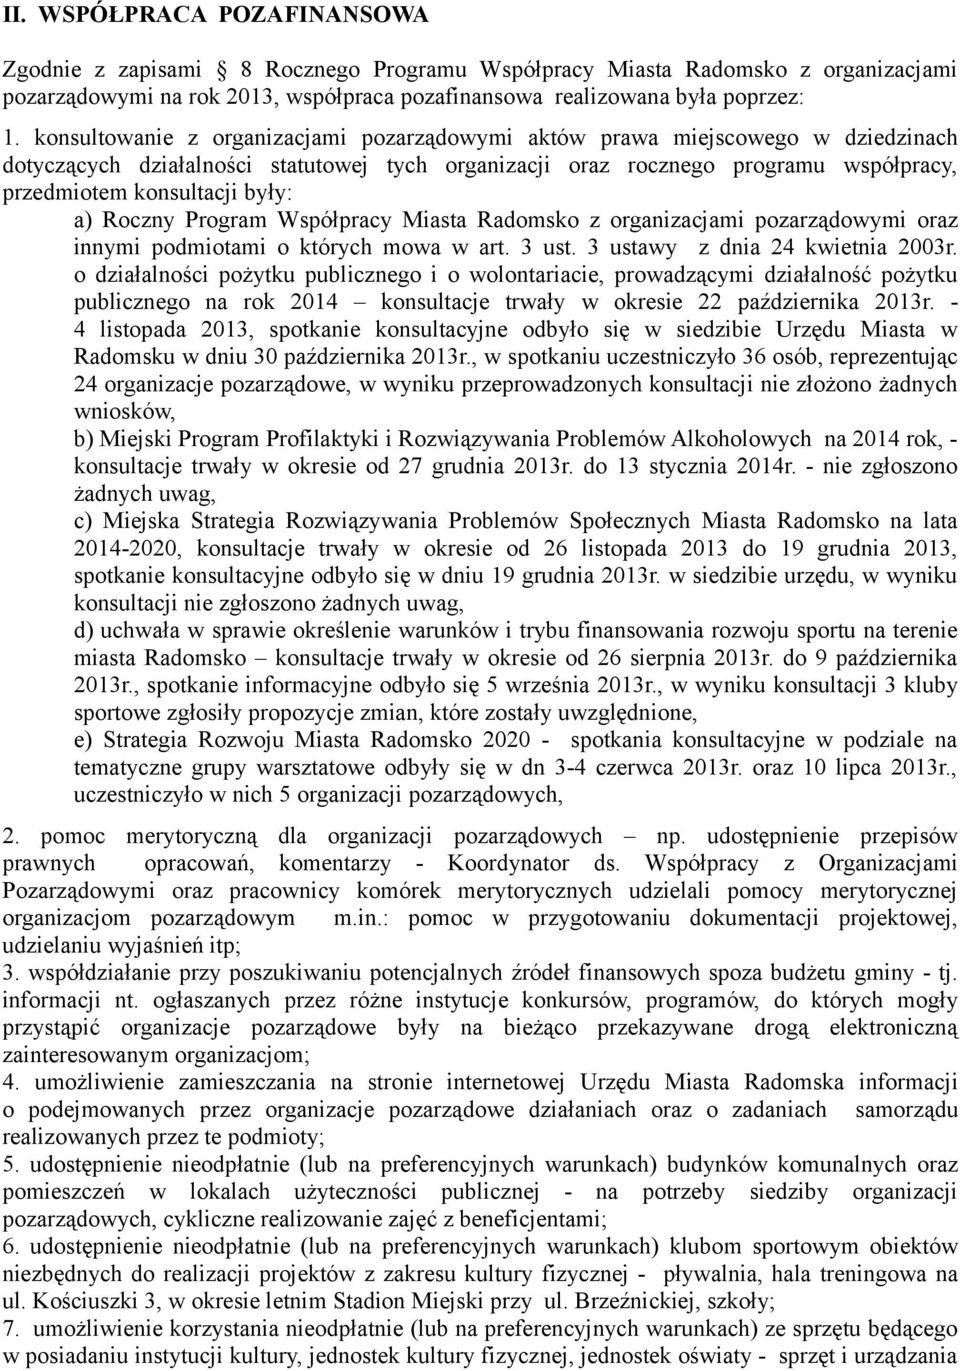 a) Roczny Program Współpracy Miasta Radomsko z organizacjami pozarządowymi oraz innymi podmiotami o których mowa w art. 3 ust. 3 ustawy z dnia 24 kwietnia 2003r.